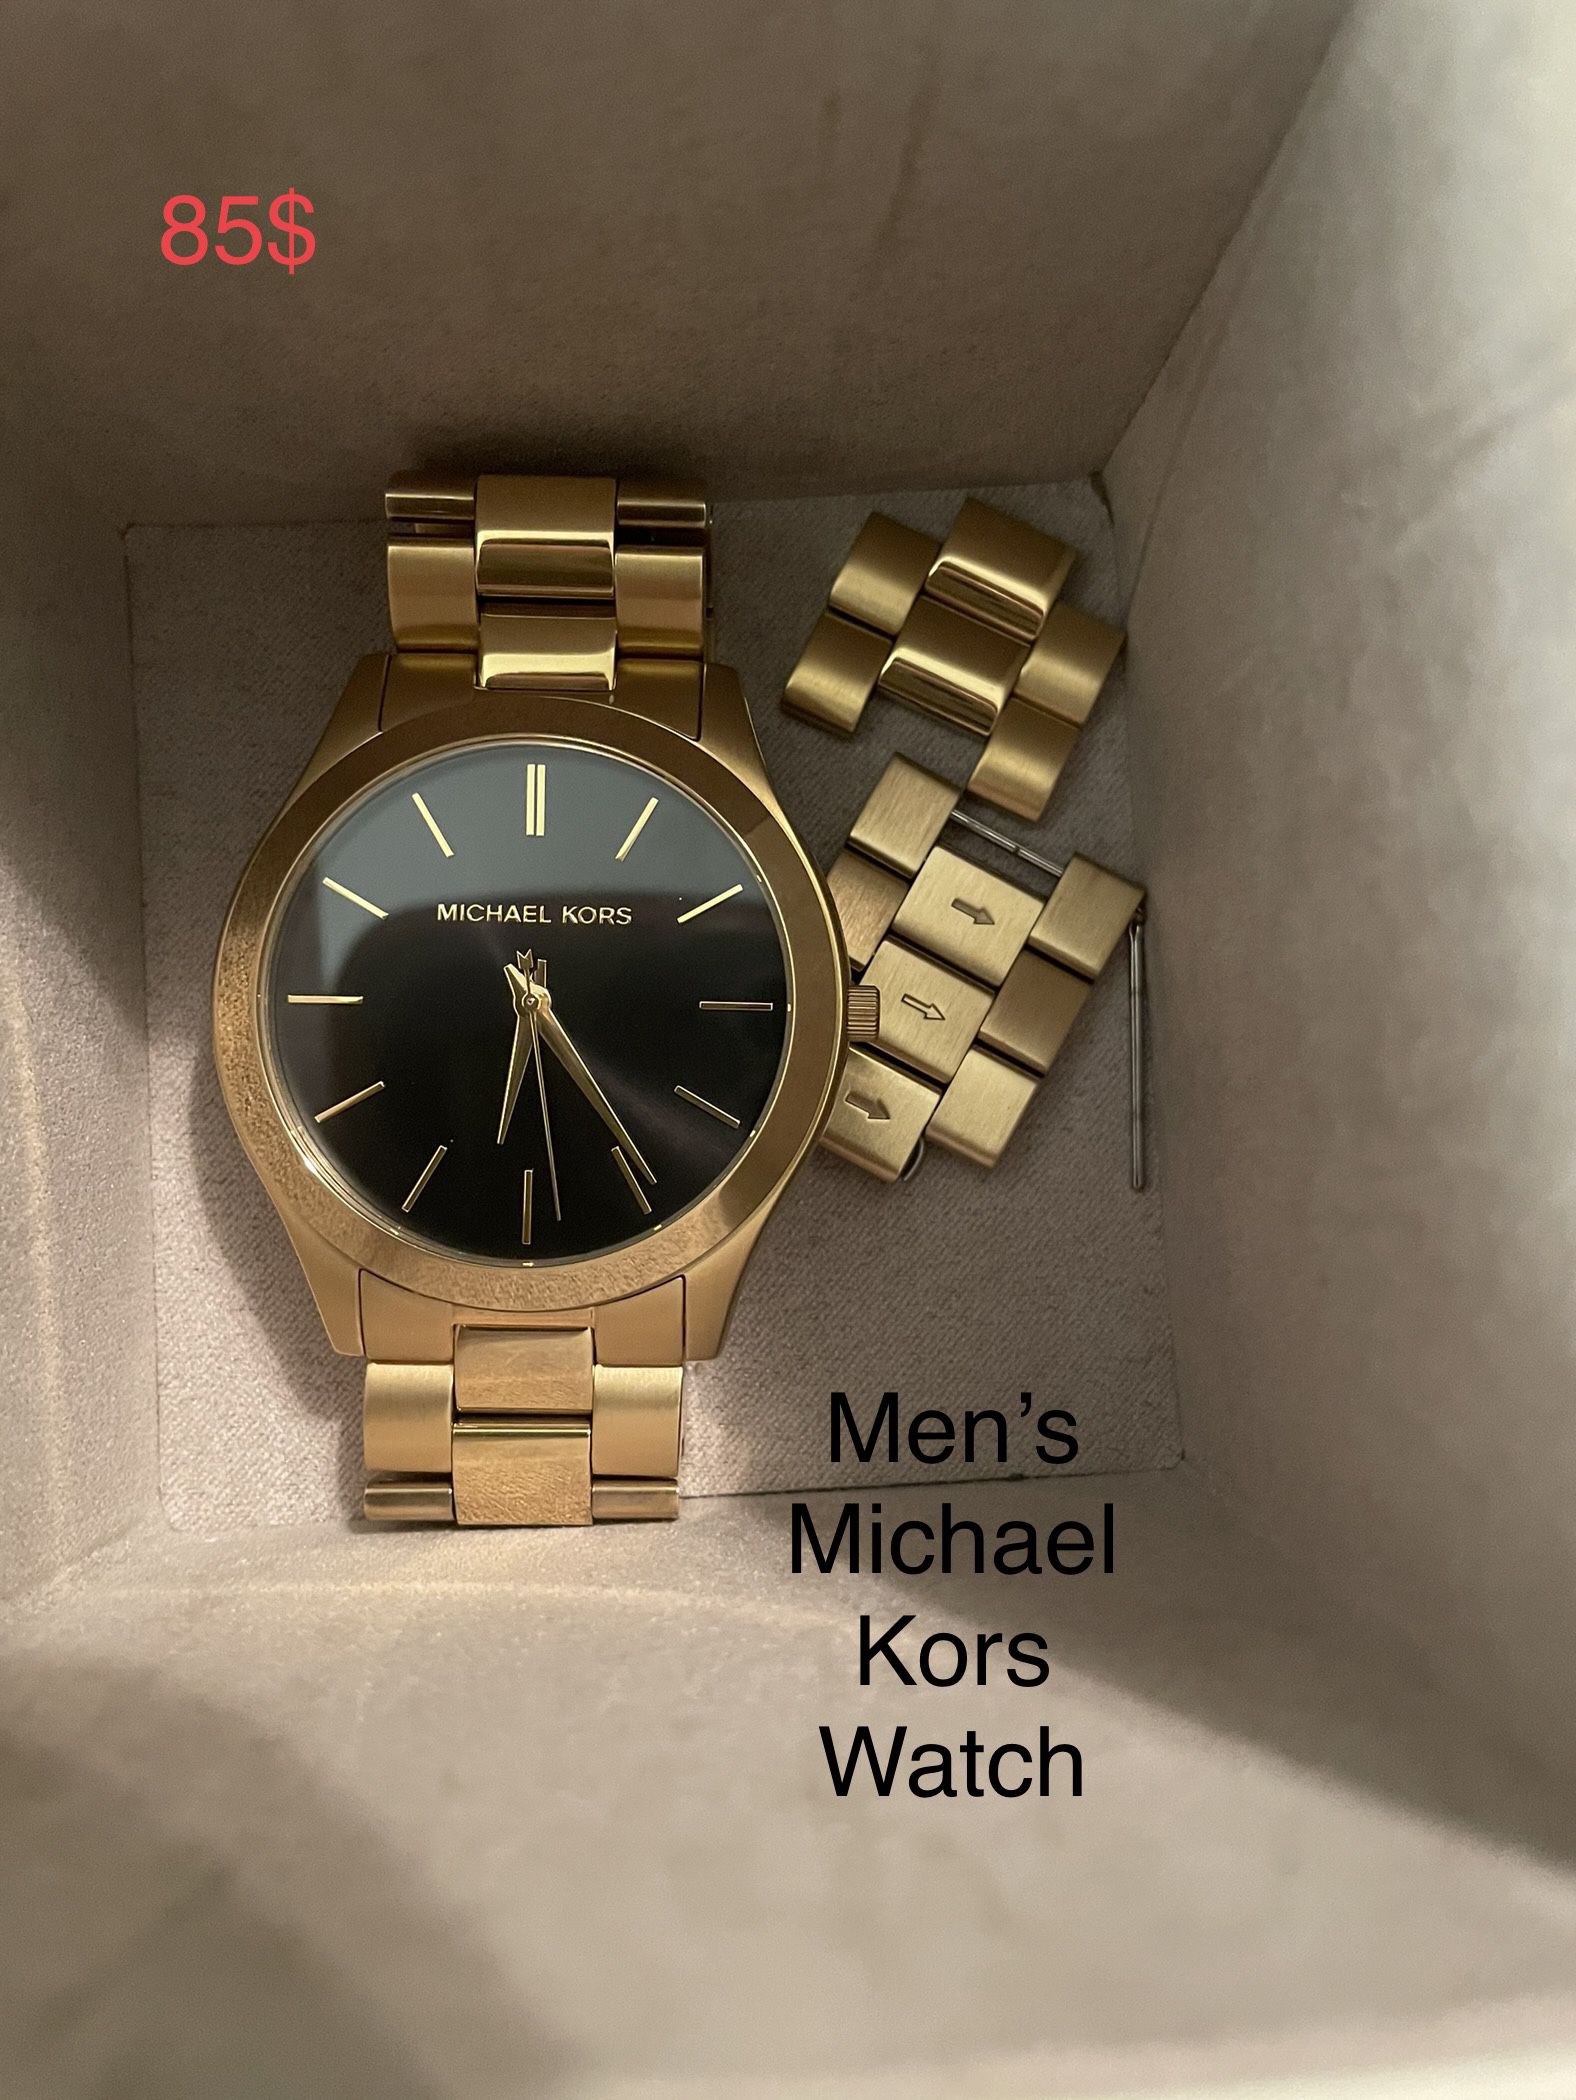 Men’s Michael Kors Watch